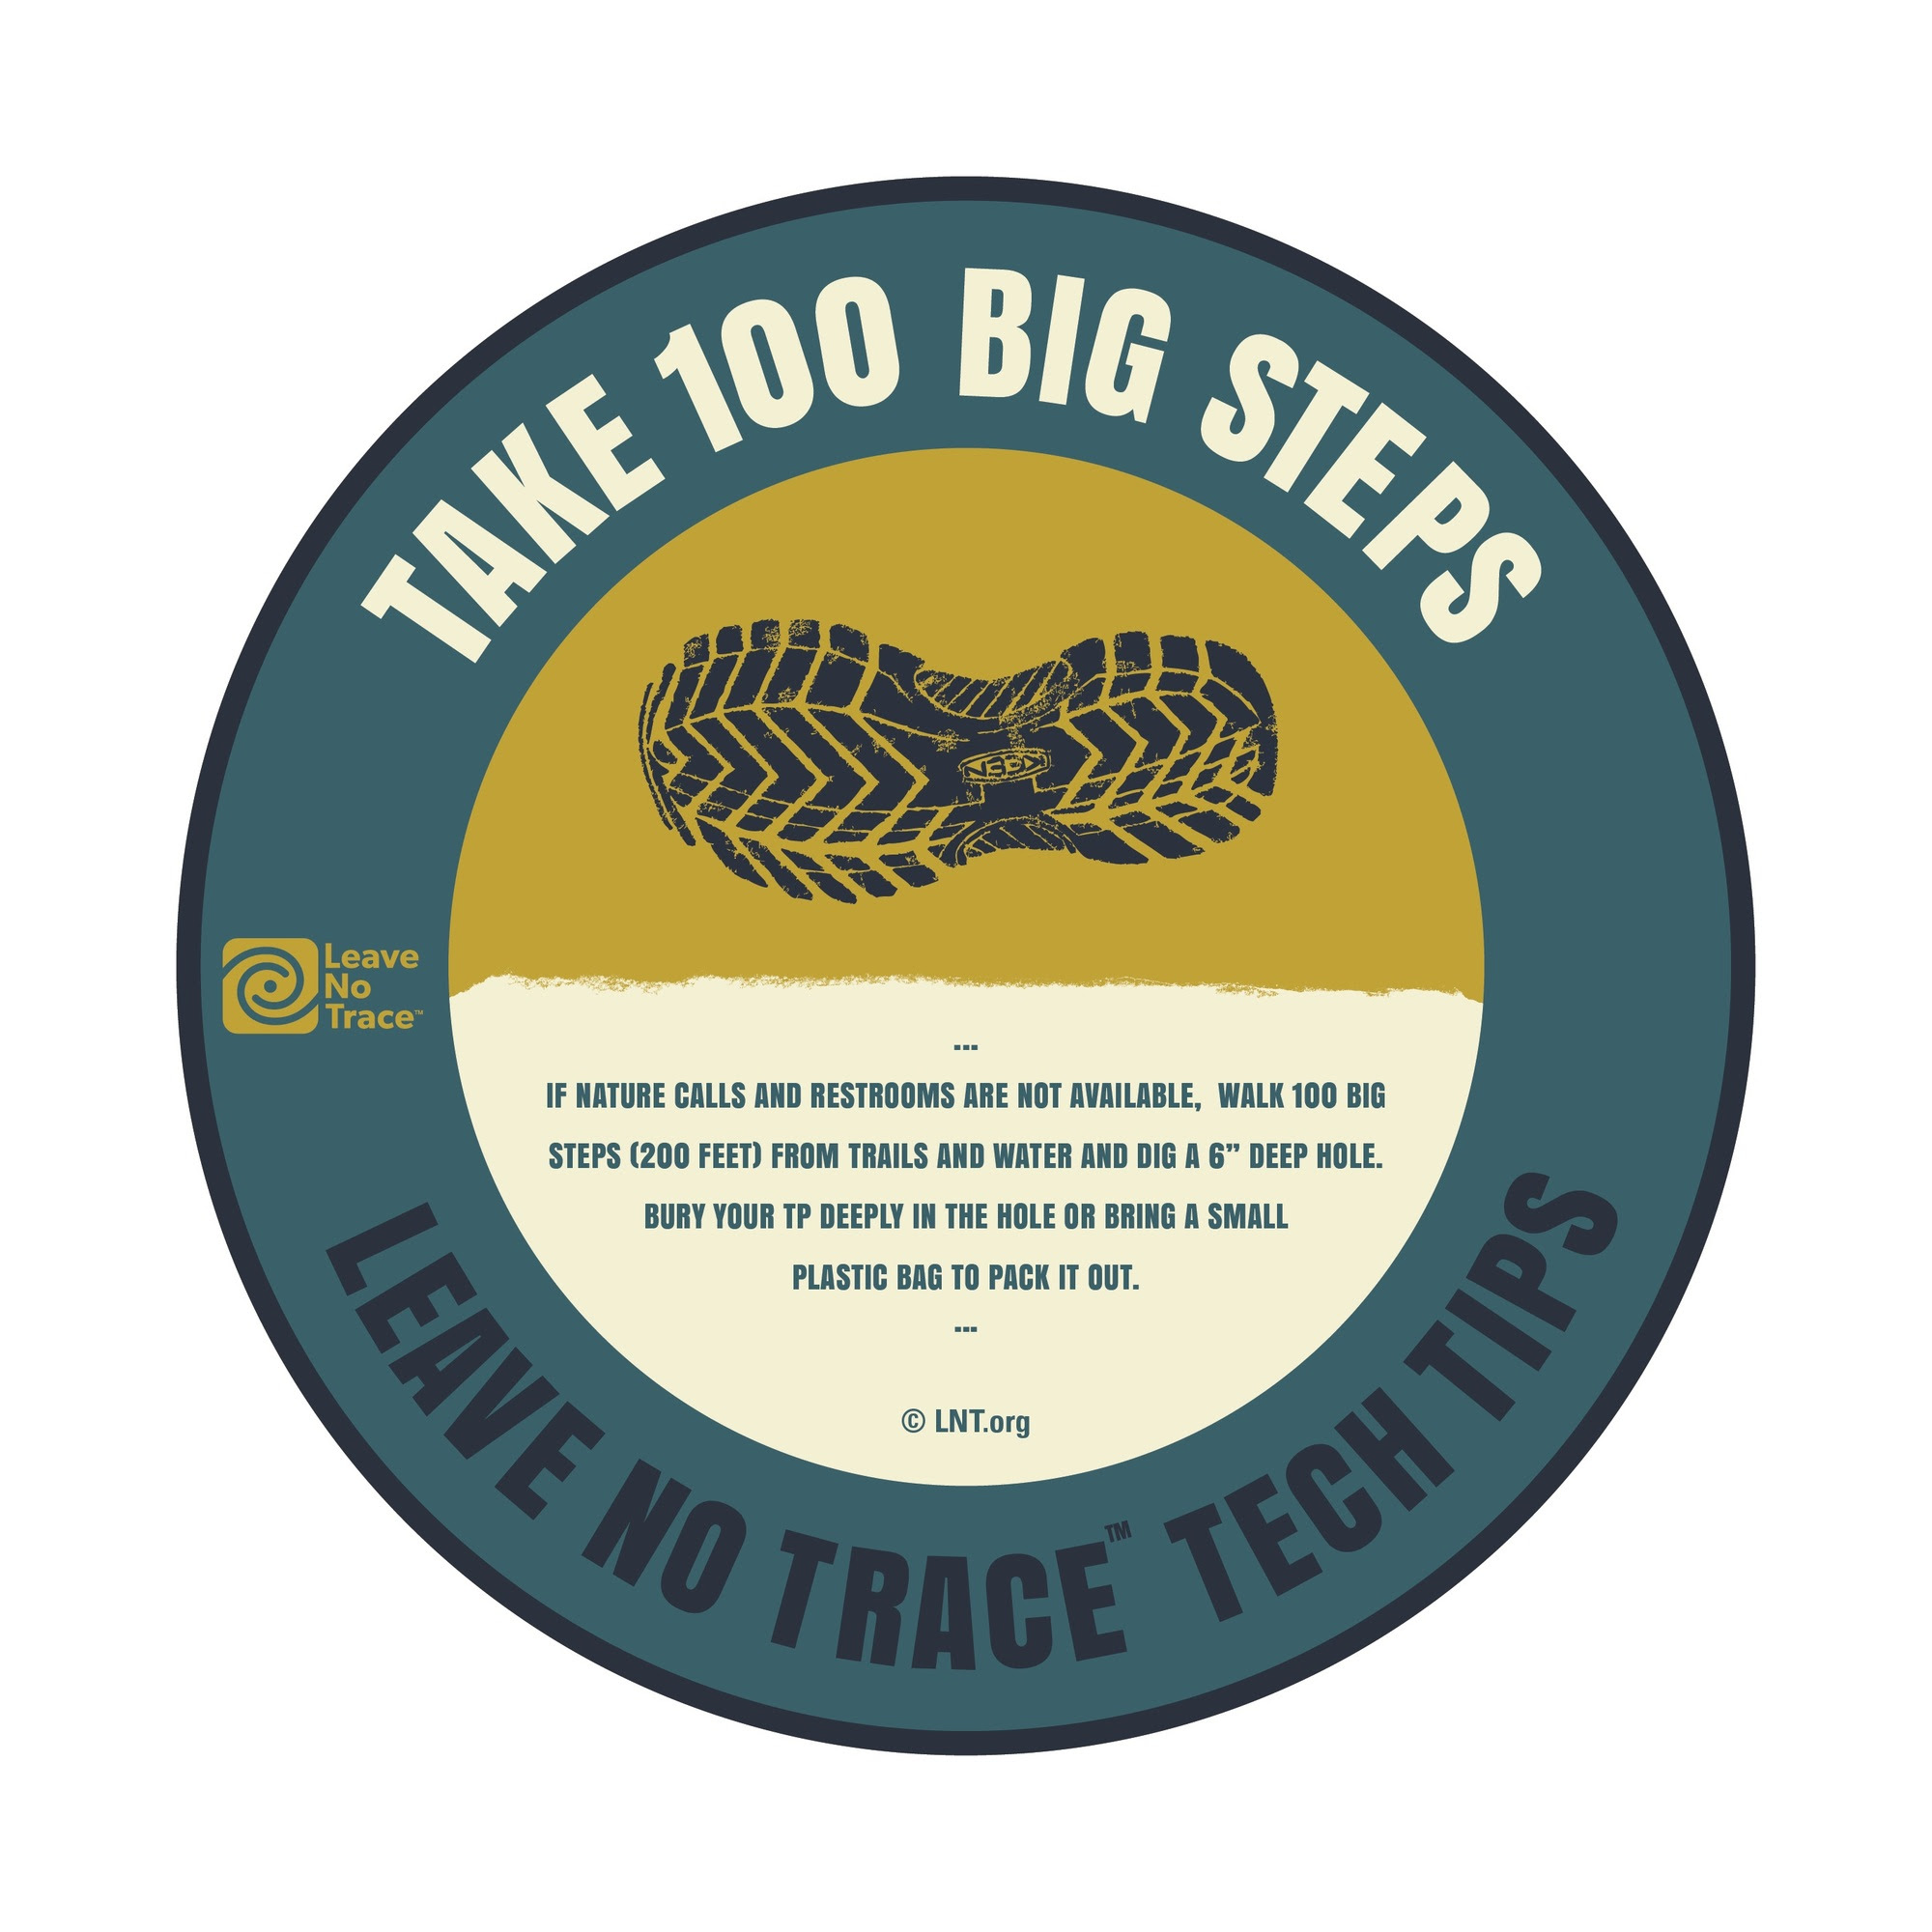 Leave No Trace Tech Tip logo: Take 100 Big Steps